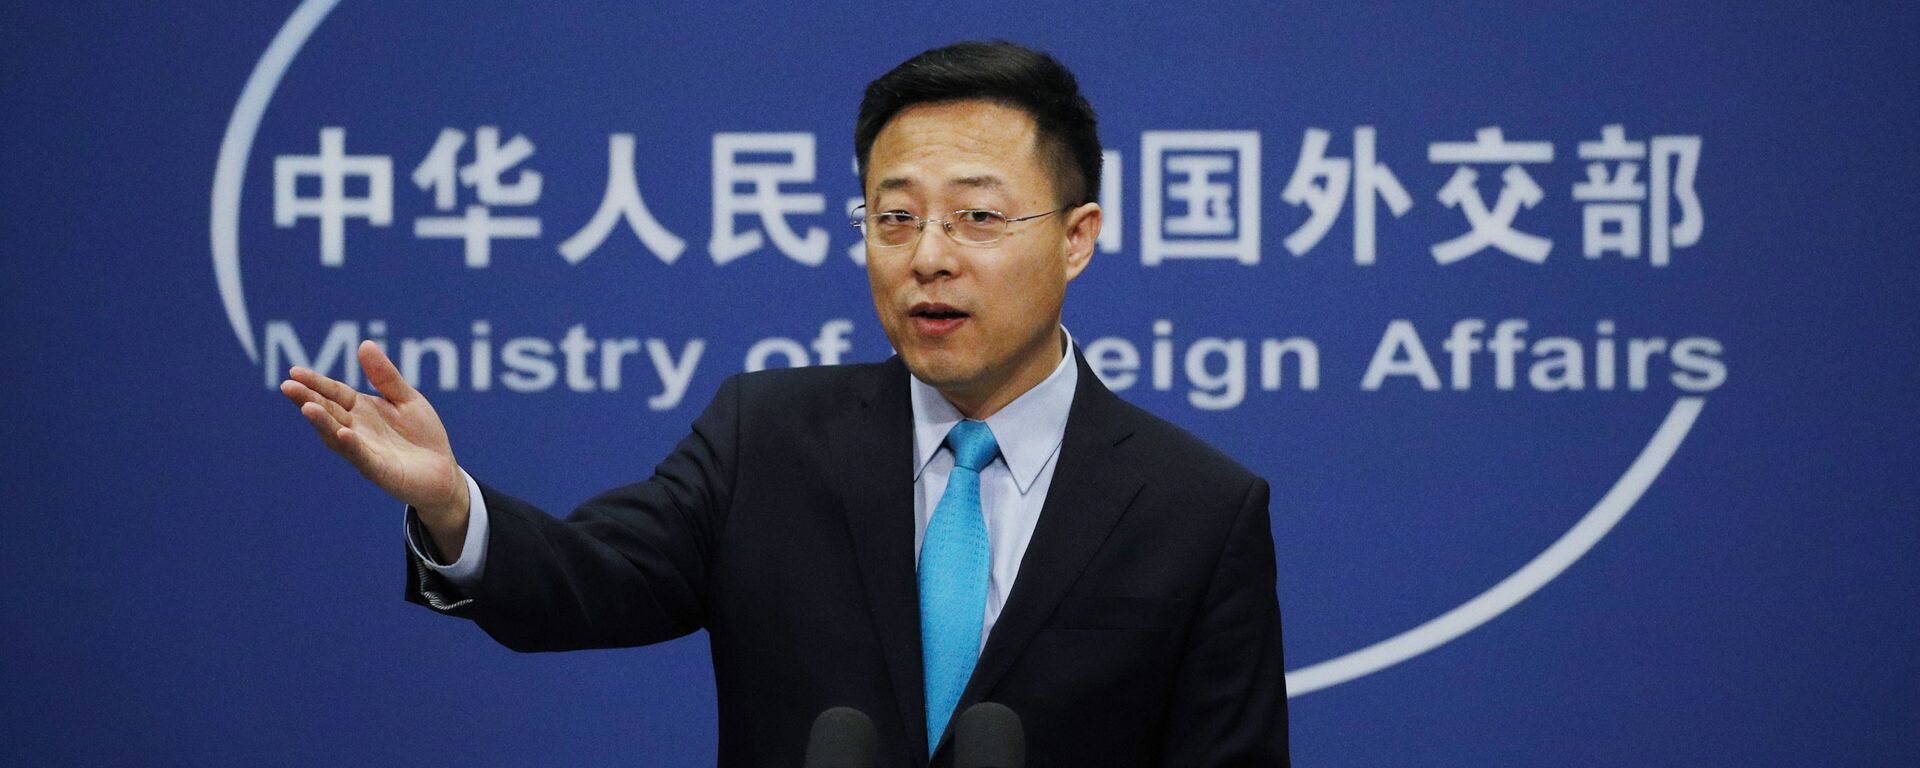 O porta-voz do Ministério das Relações Exteriores da China, Zhao Lijian, gesticula durante uma declaração em Pequim no escritório da Chancelaria chinesa, em 24 de fevereiro de 2020. - Sputnik Brasil, 1920, 05.06.2022